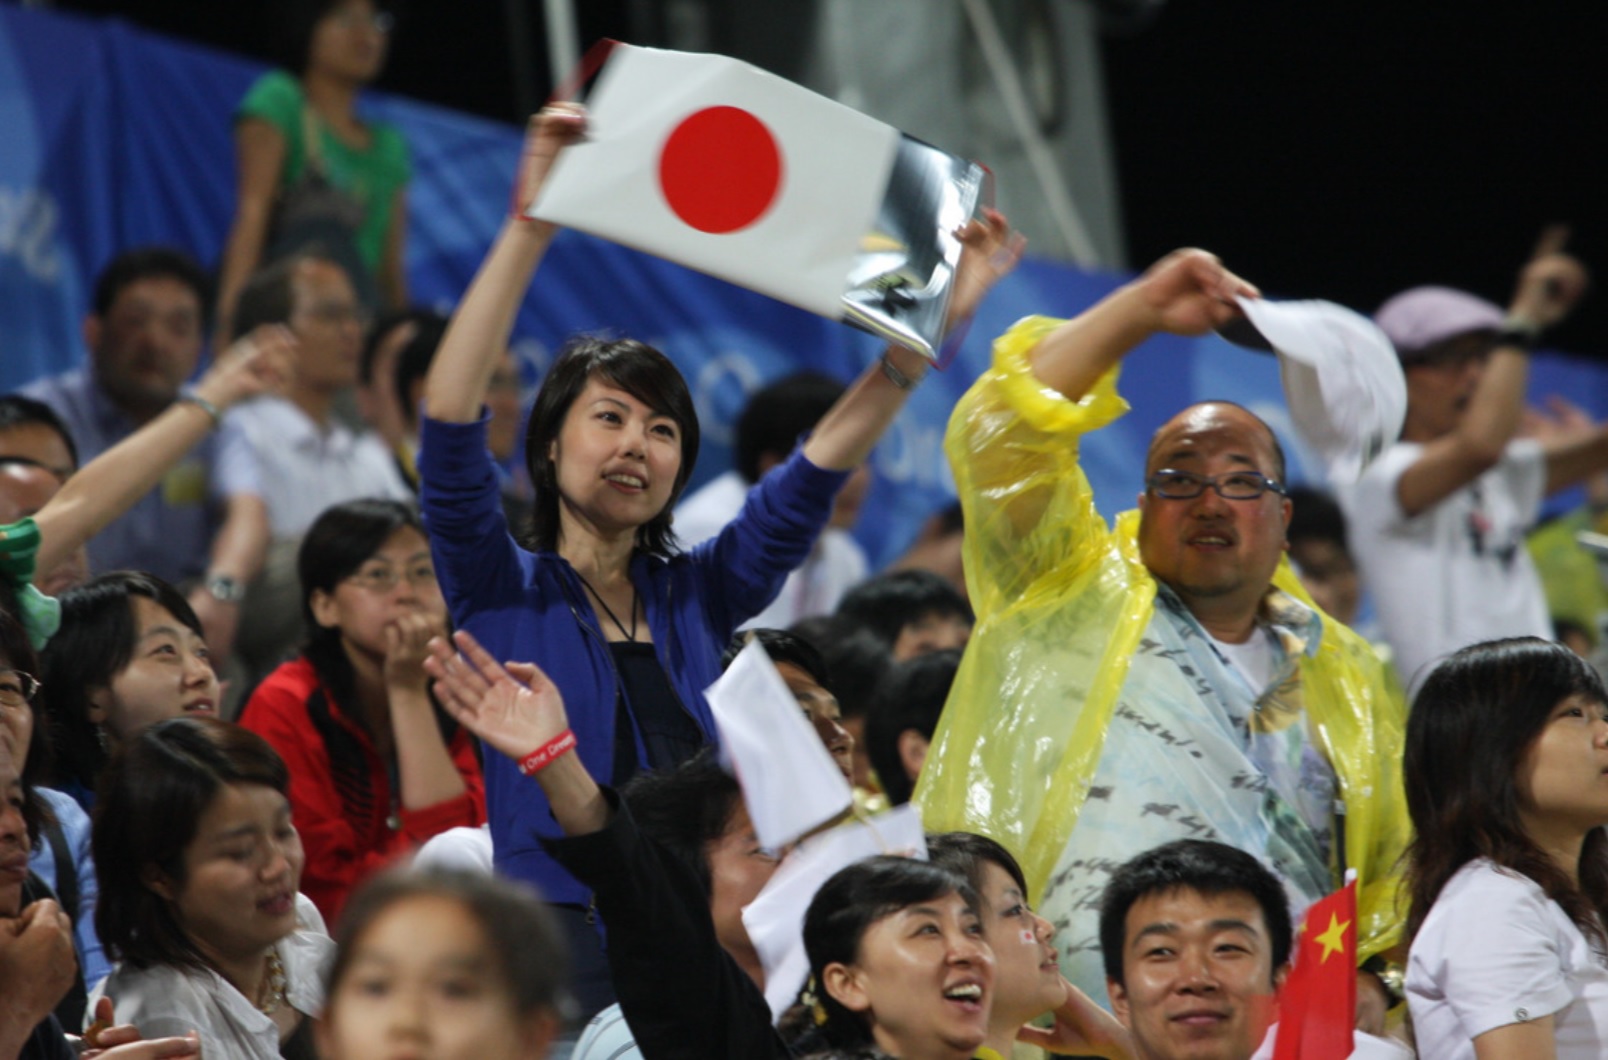 東京五輪で日本人選手の金メダル獲得運を見通す